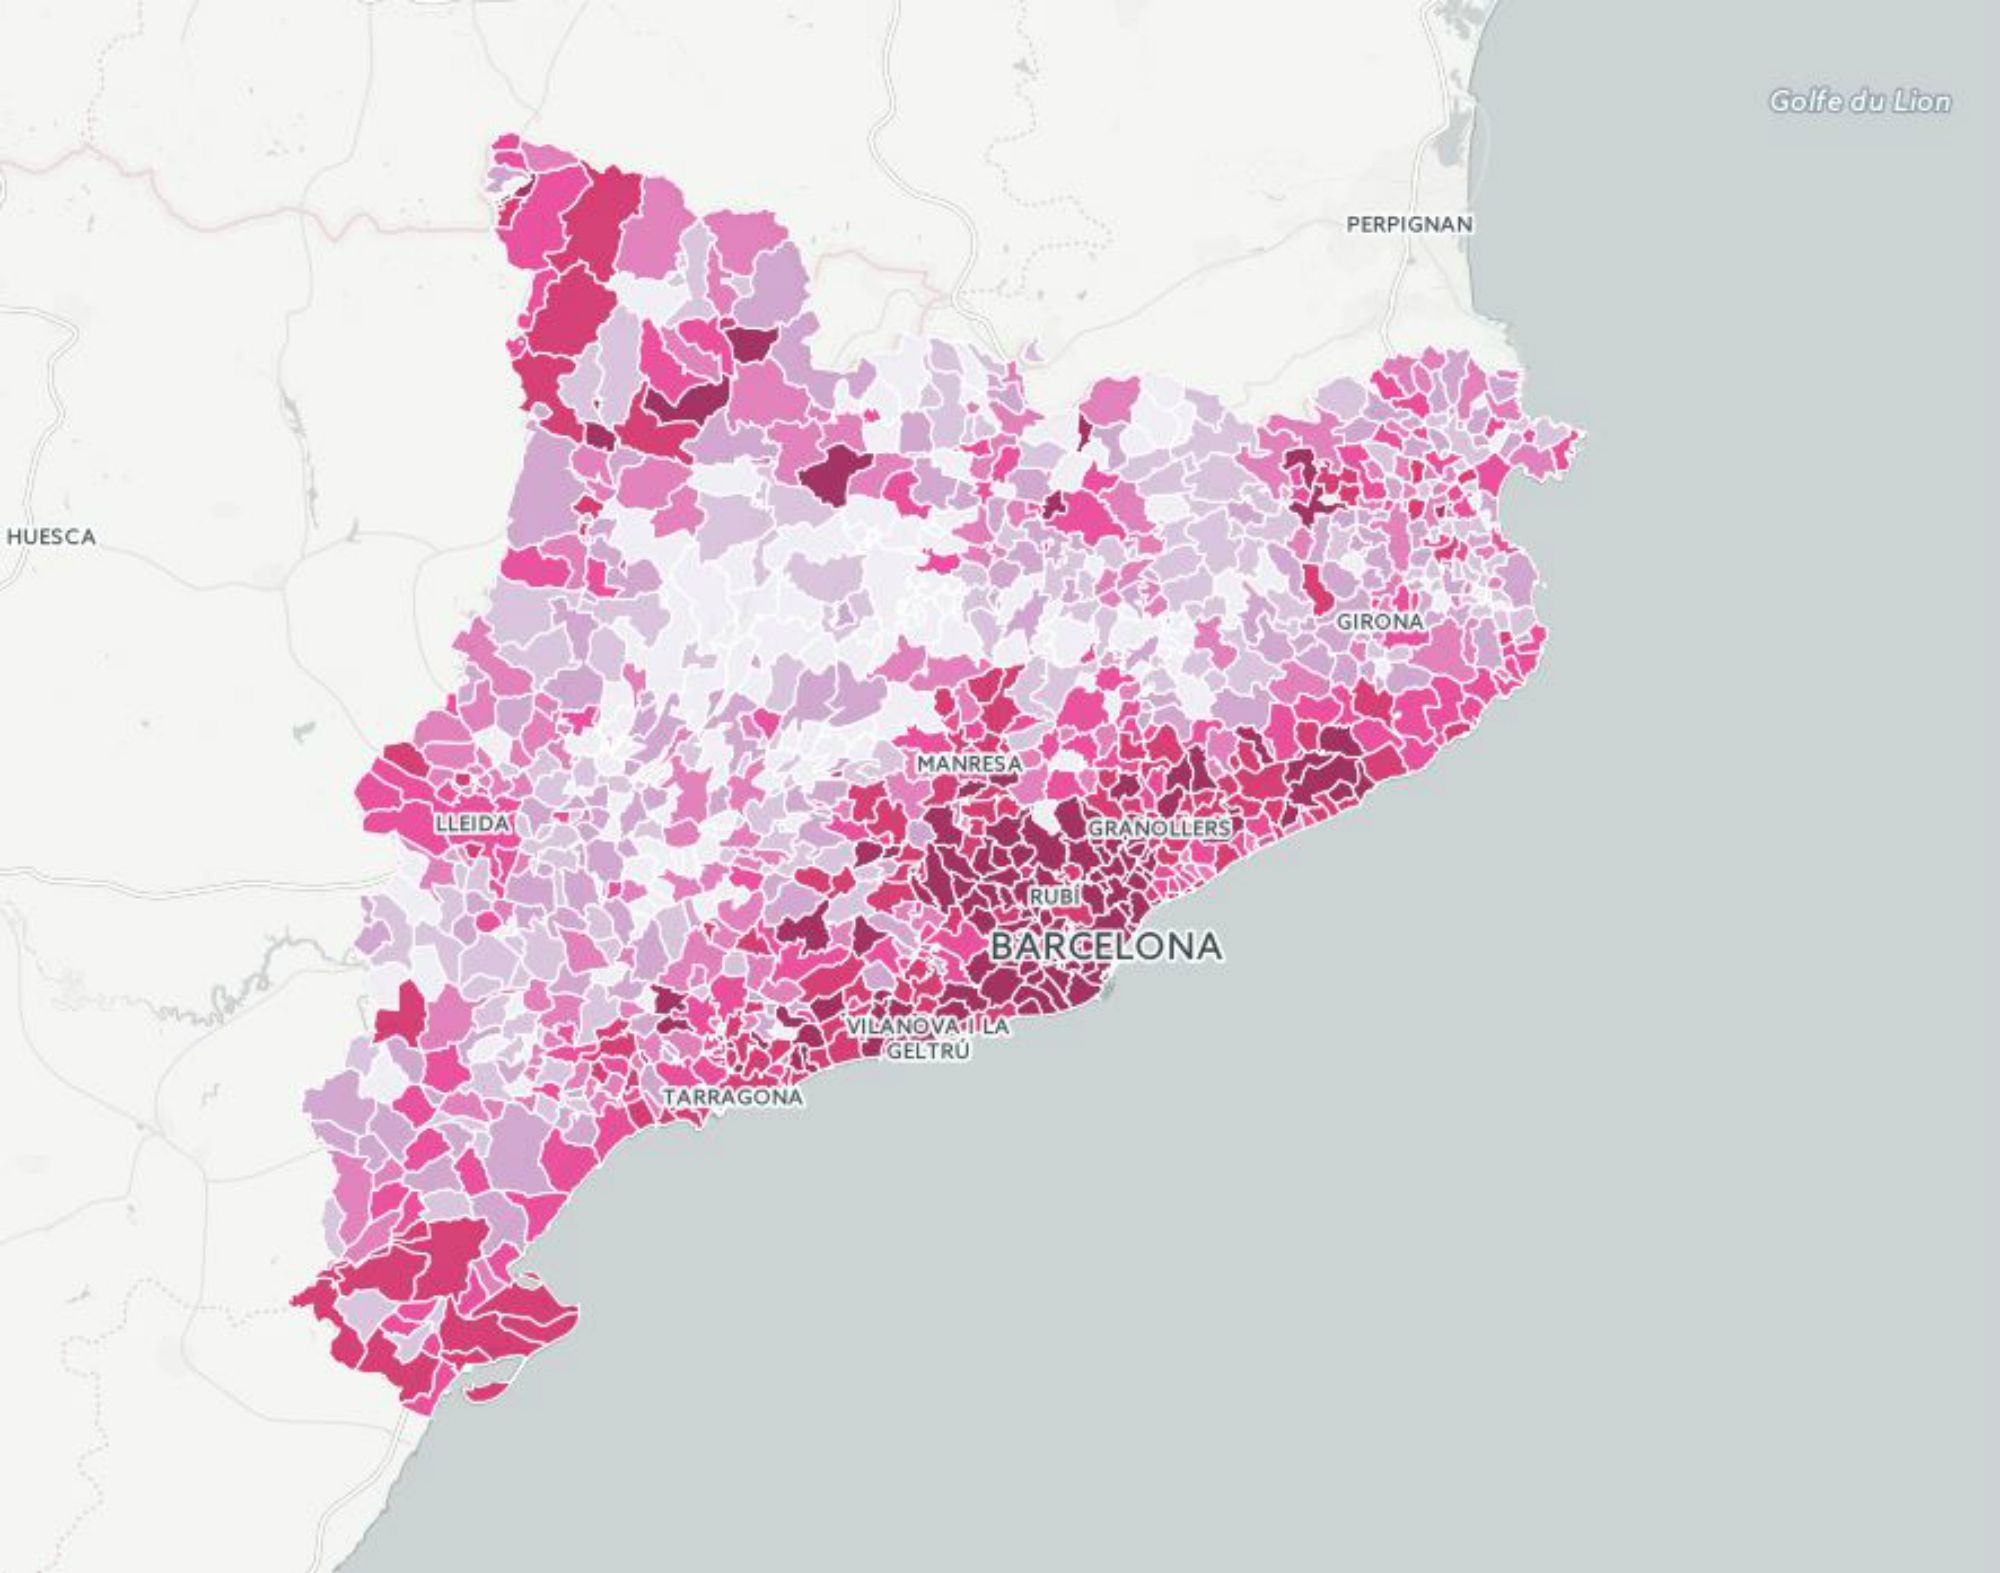 Mapas: Cómo se distribuyó el voto en Catalunya el 20-D?